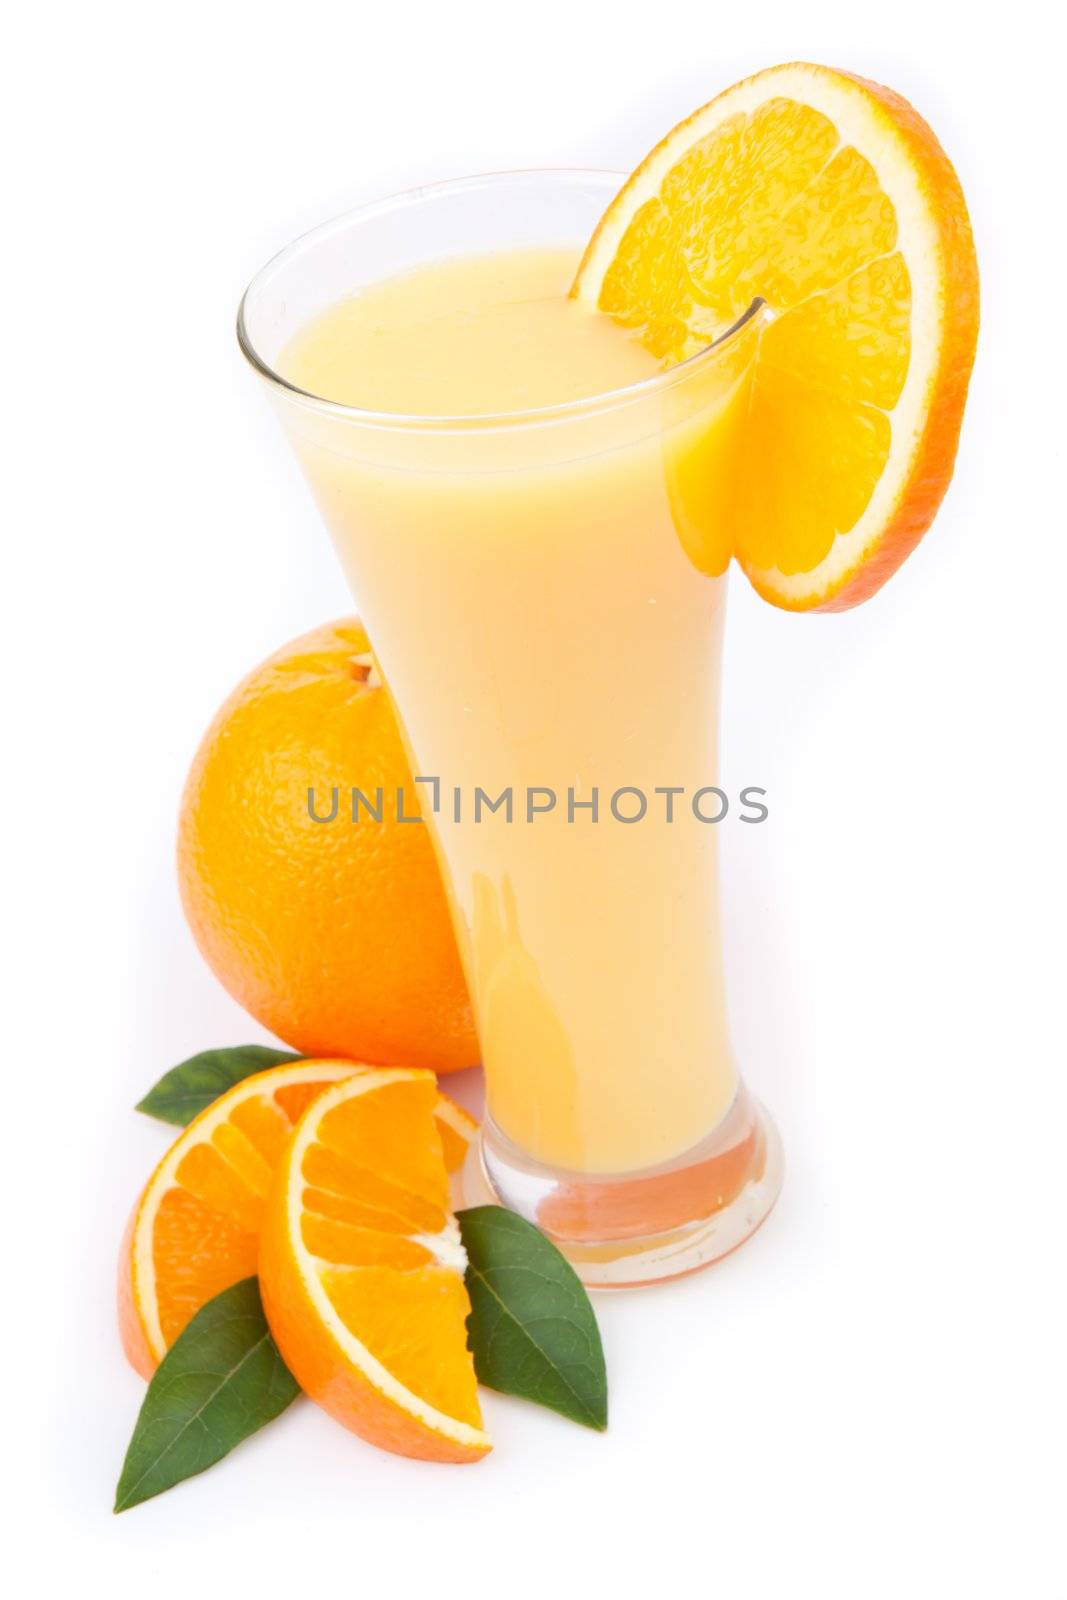 Orange juice ready to drink by Wavebreakmedia